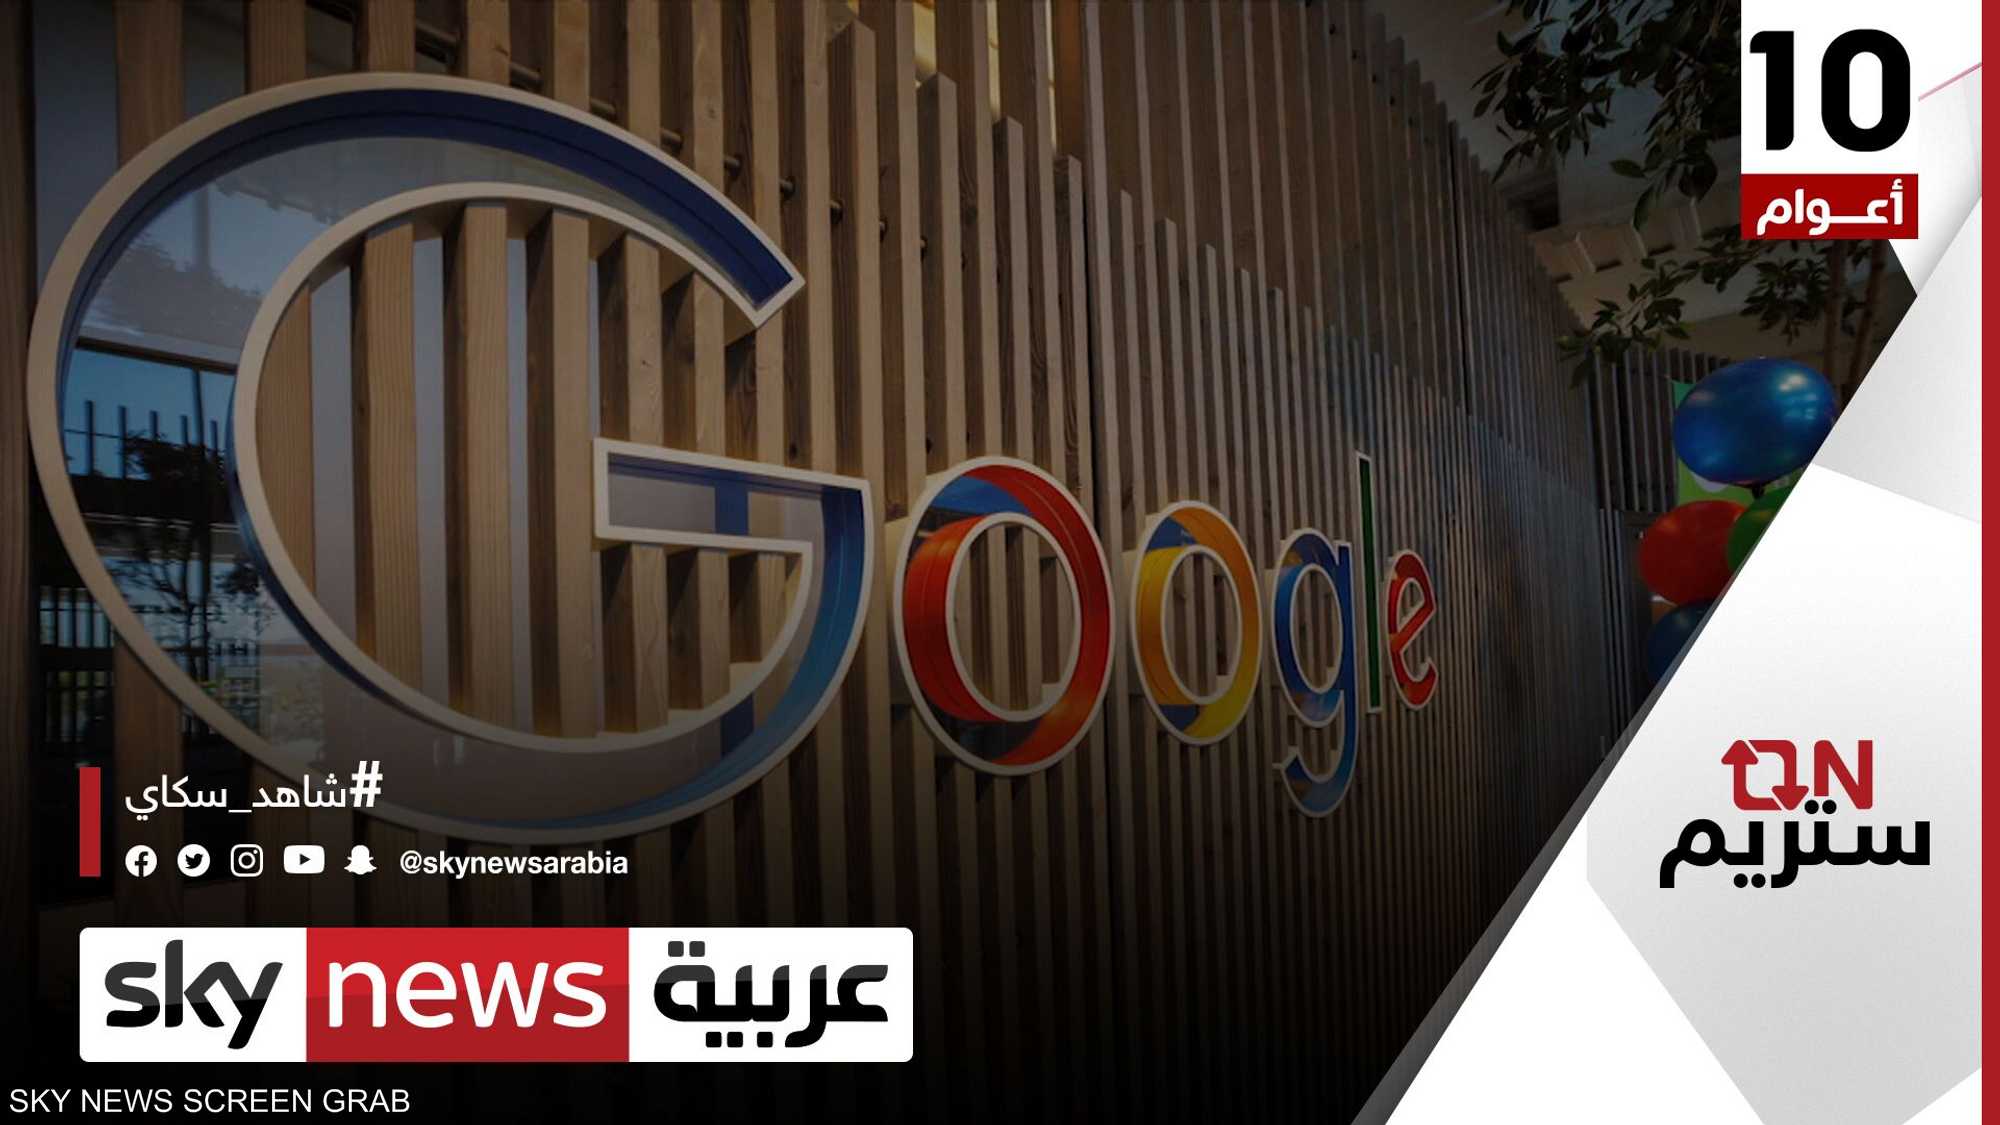 غوغل.. اقتصاد ينمو في الشرق الأوسط